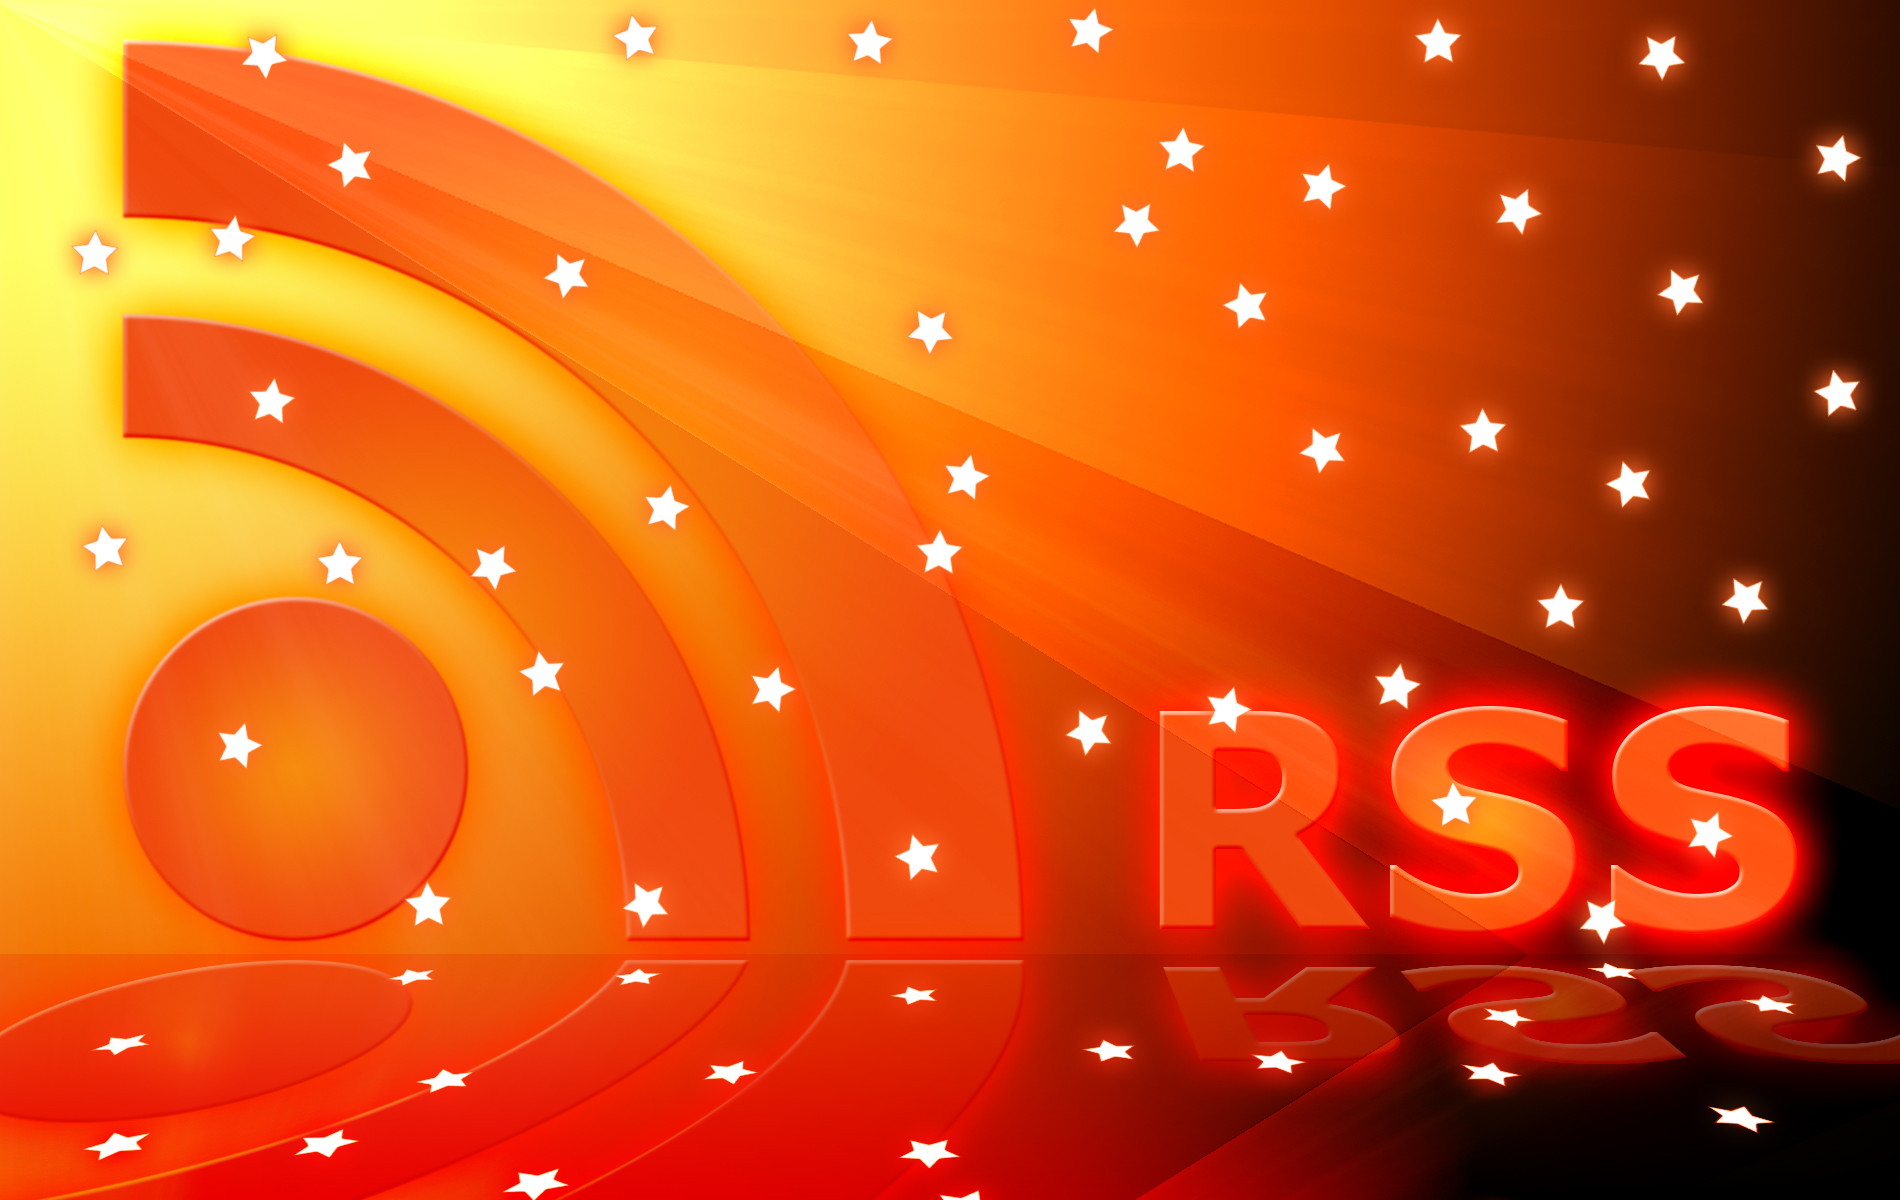 rss wallpaper,orange,red,light,amber,circle